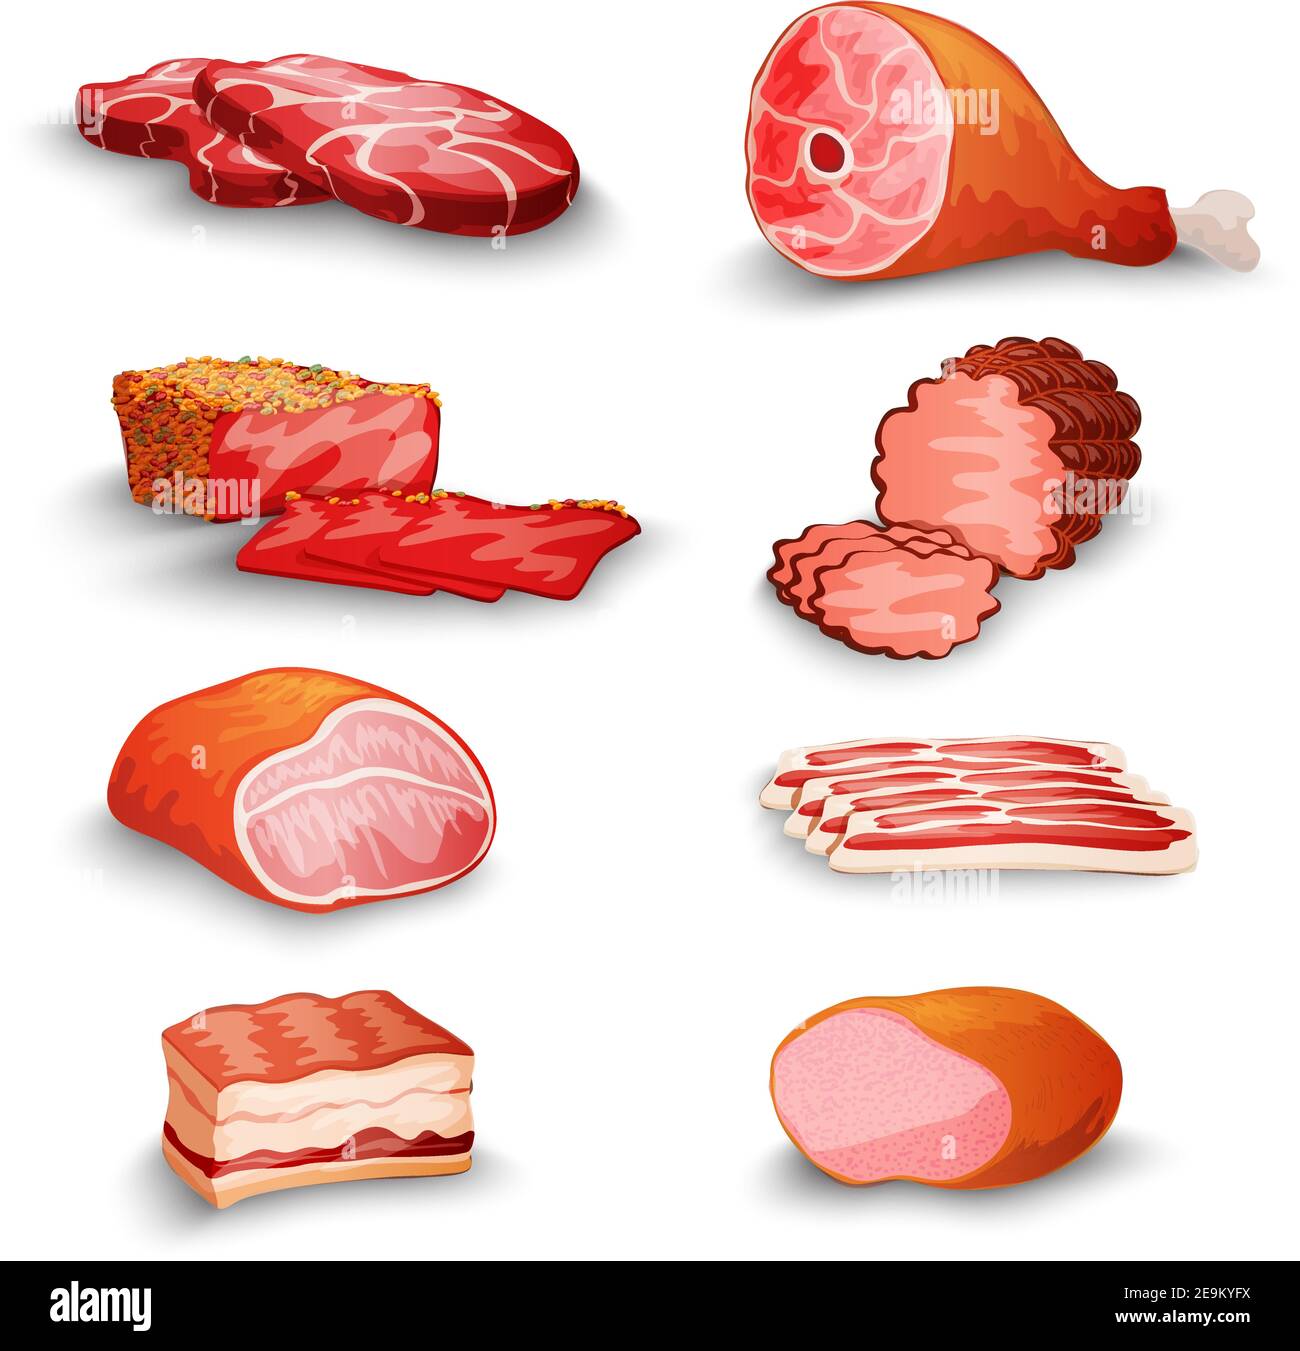 Des produits de viande fraîche sont préparés avec des filets de bacon et du jambon isolés illustration vectorielle Illustration de Vecteur